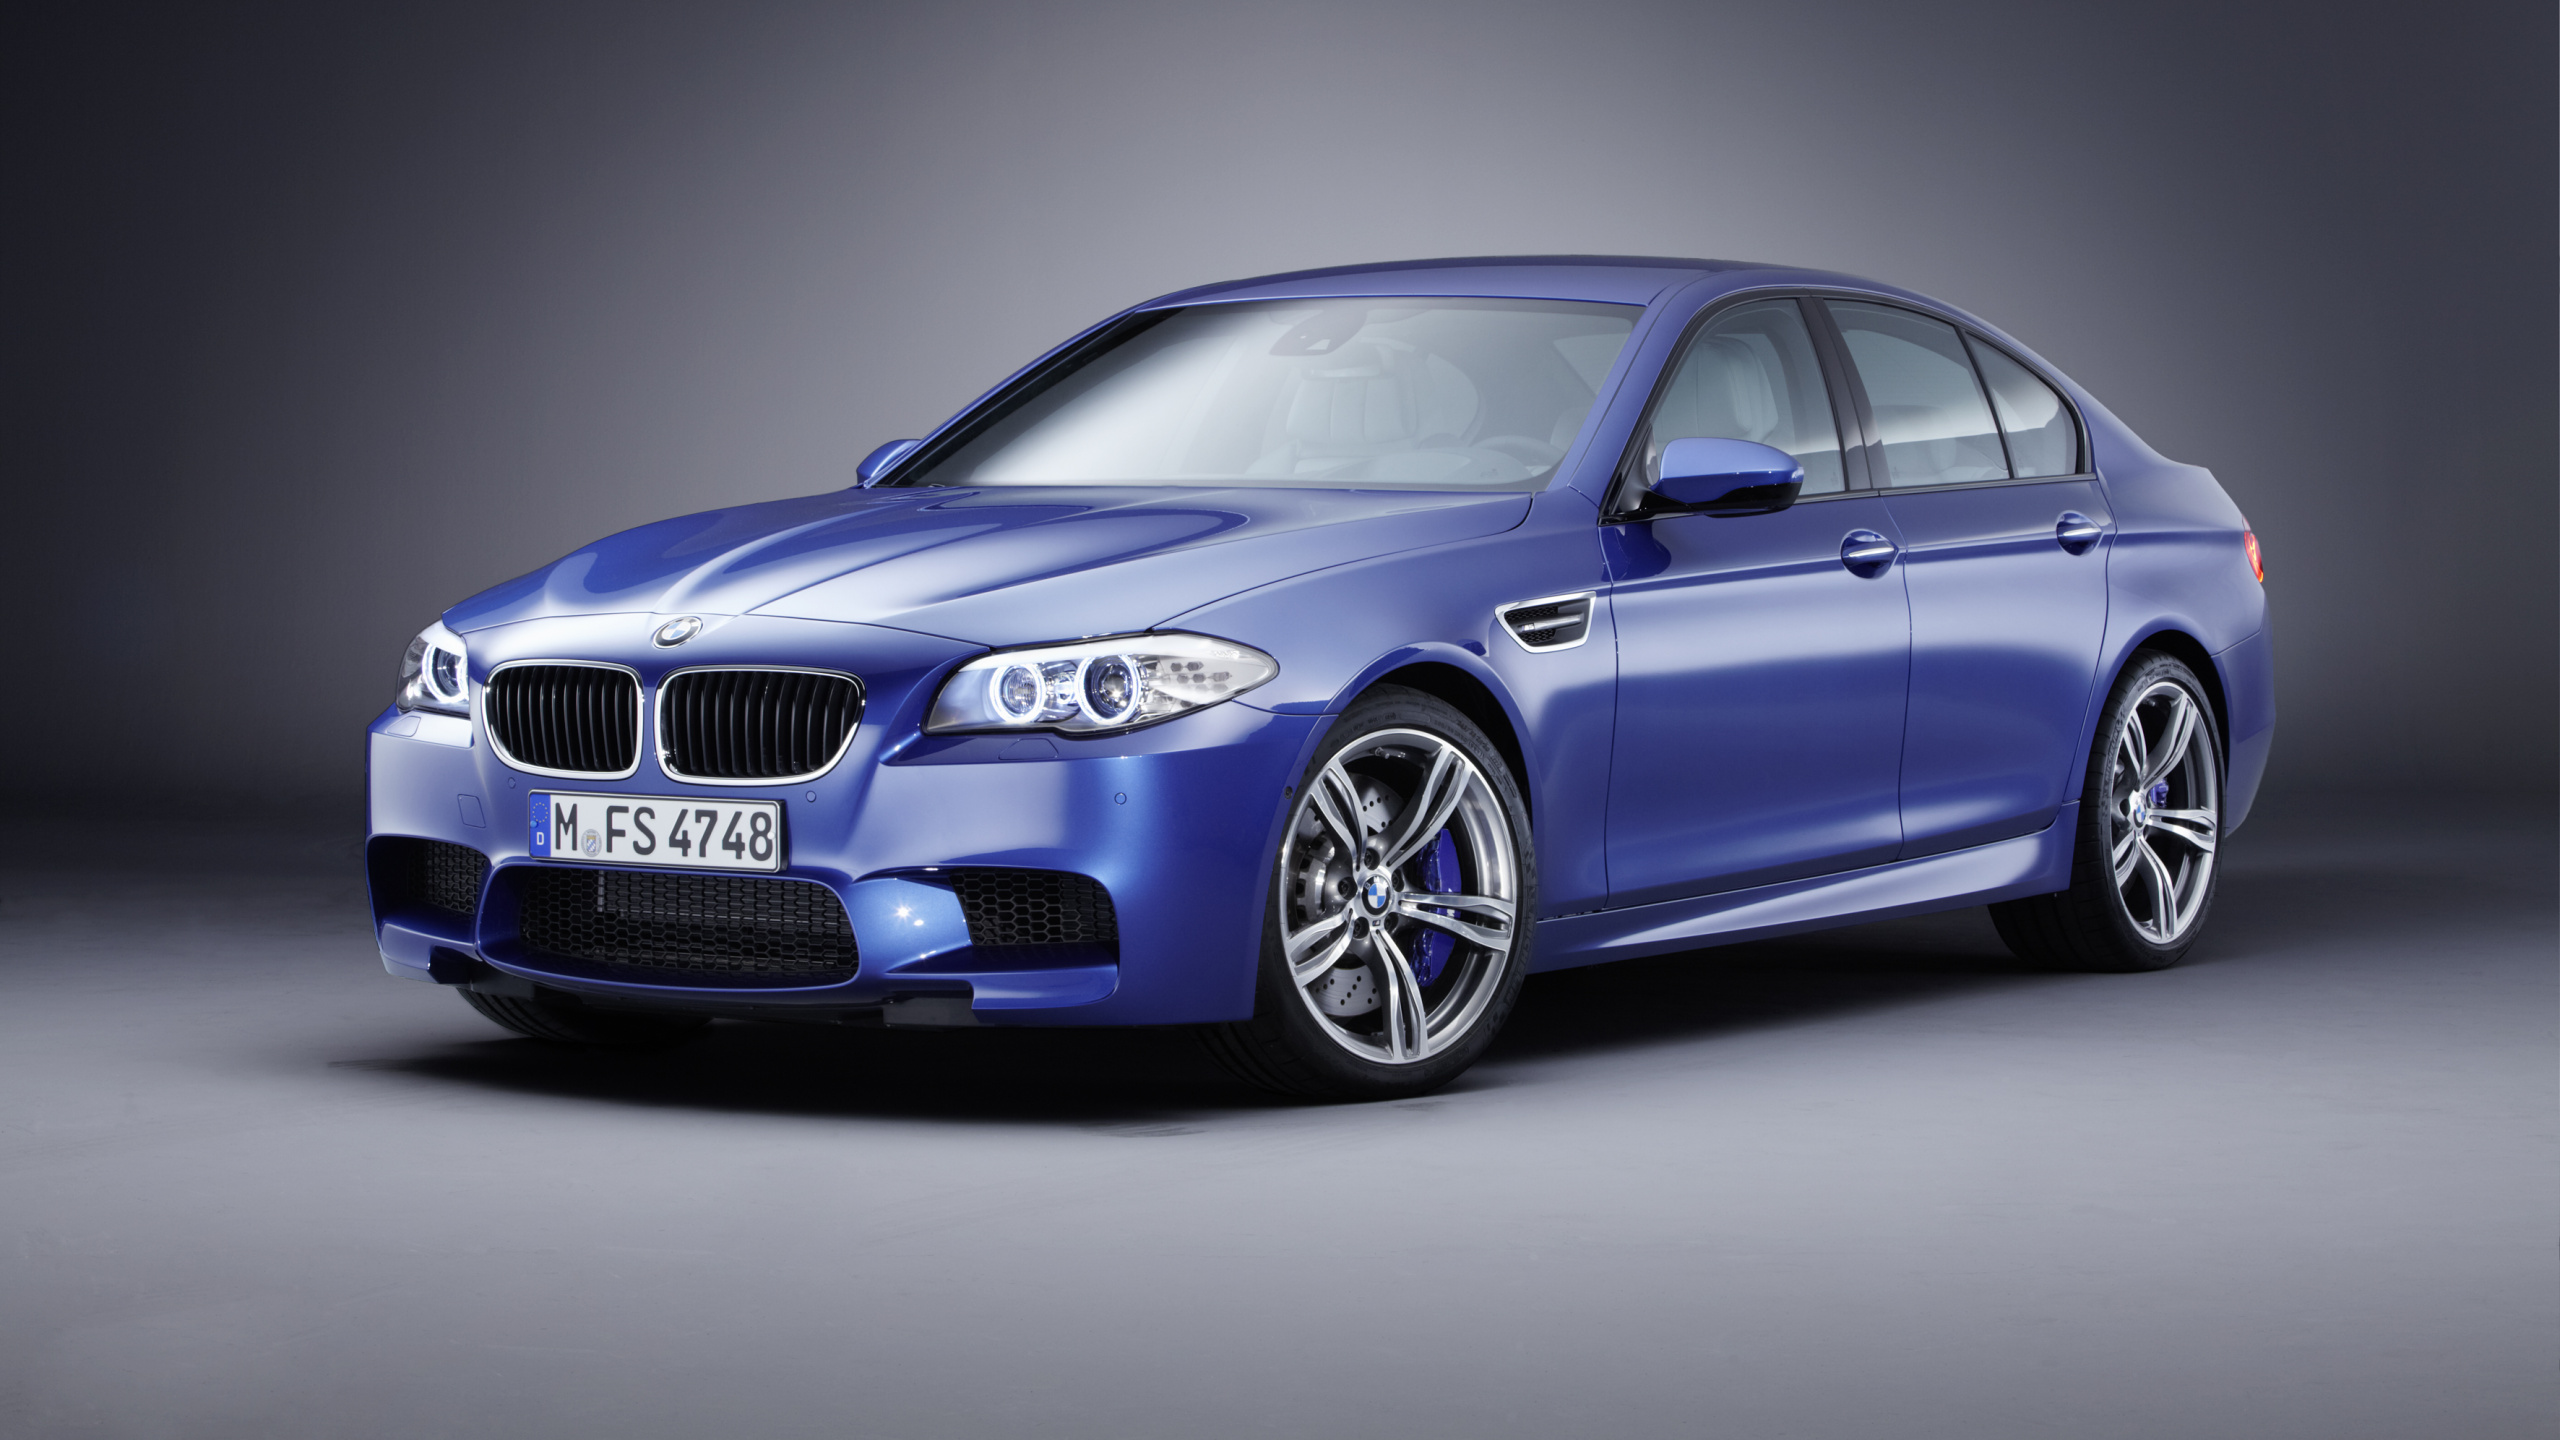 2013年BMW M5, 宝马, 宝马5系列F10, 宝马3系列, BMW1系 壁纸 2560x1440 允许